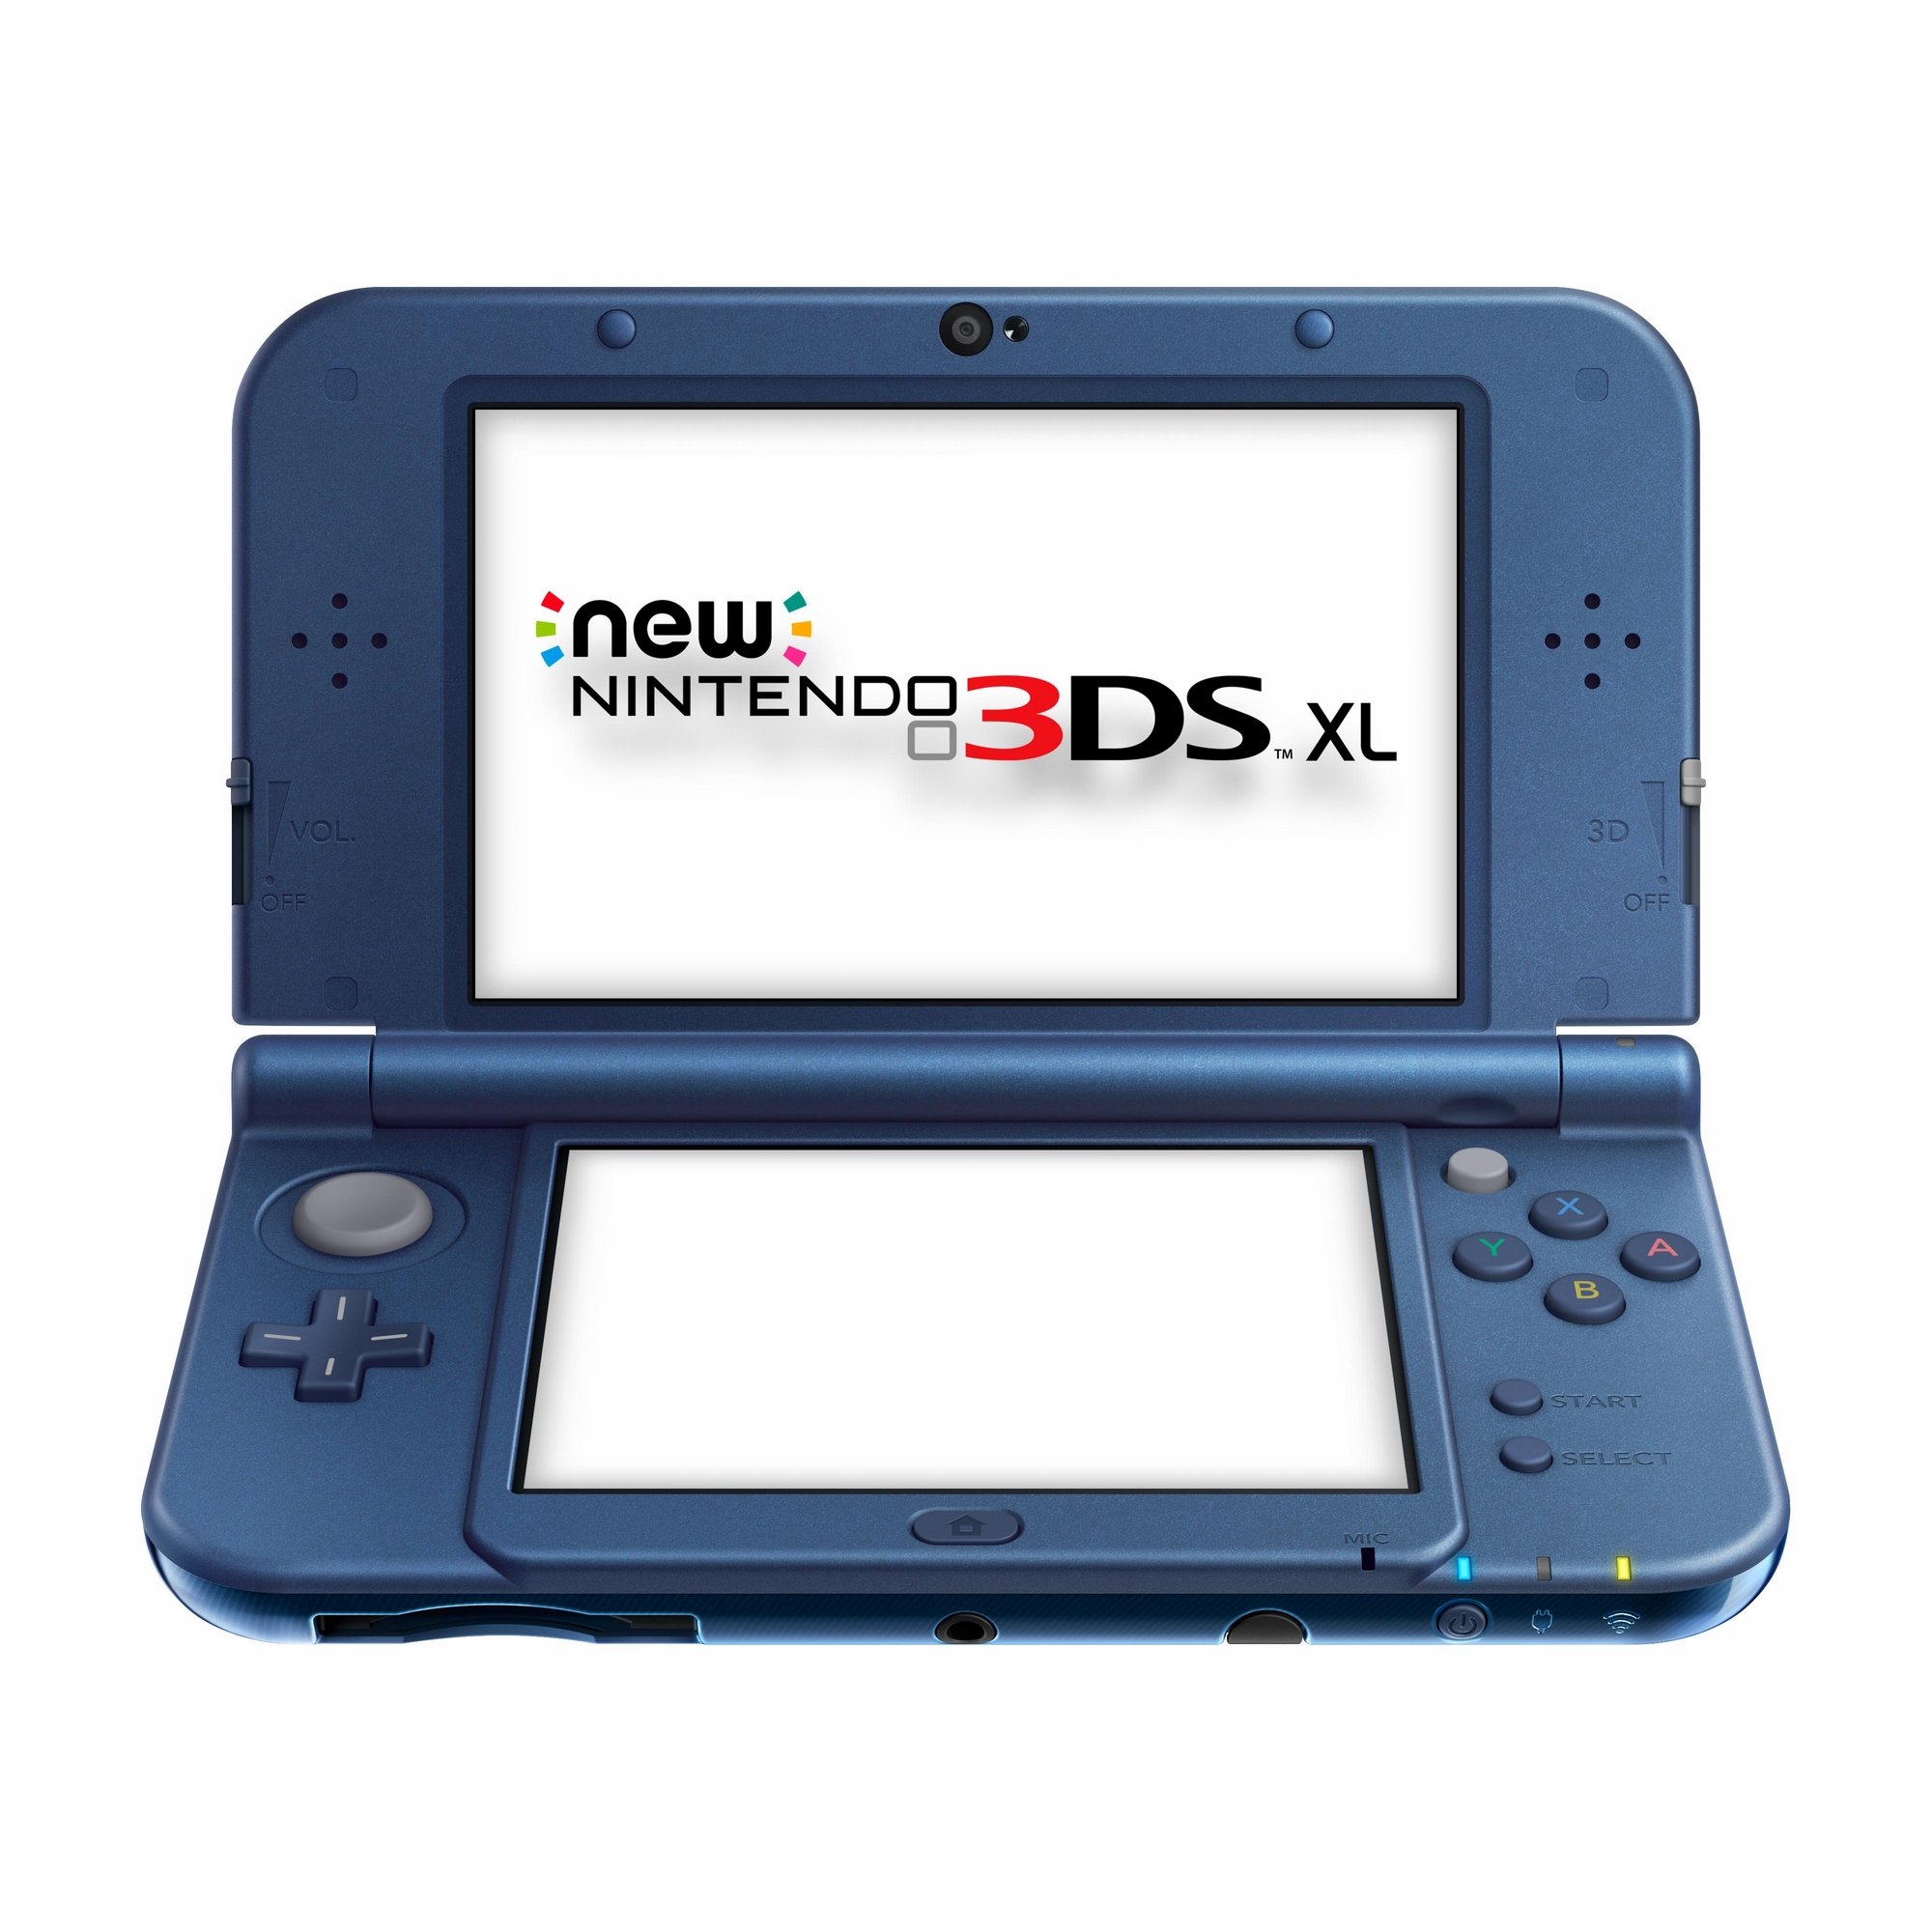 Osta New Nintendo 3DS XL Console - Metallic Blue